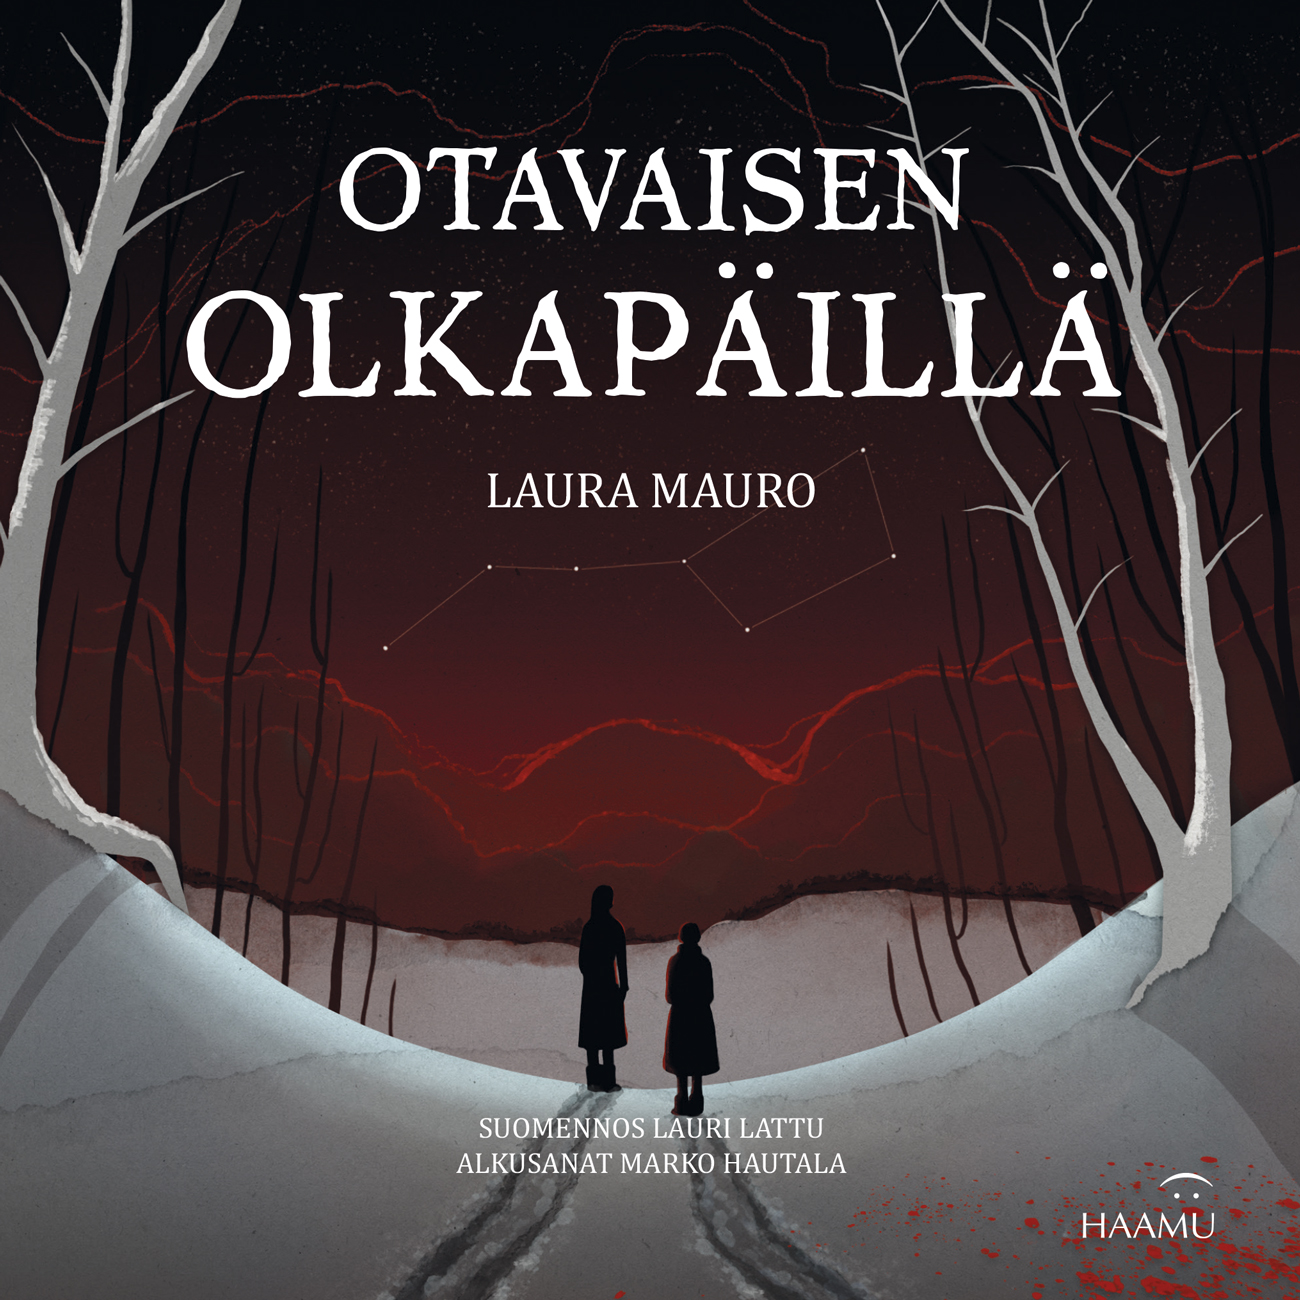 Laura Mauron Otavaisen olkapäillä kansikuva.